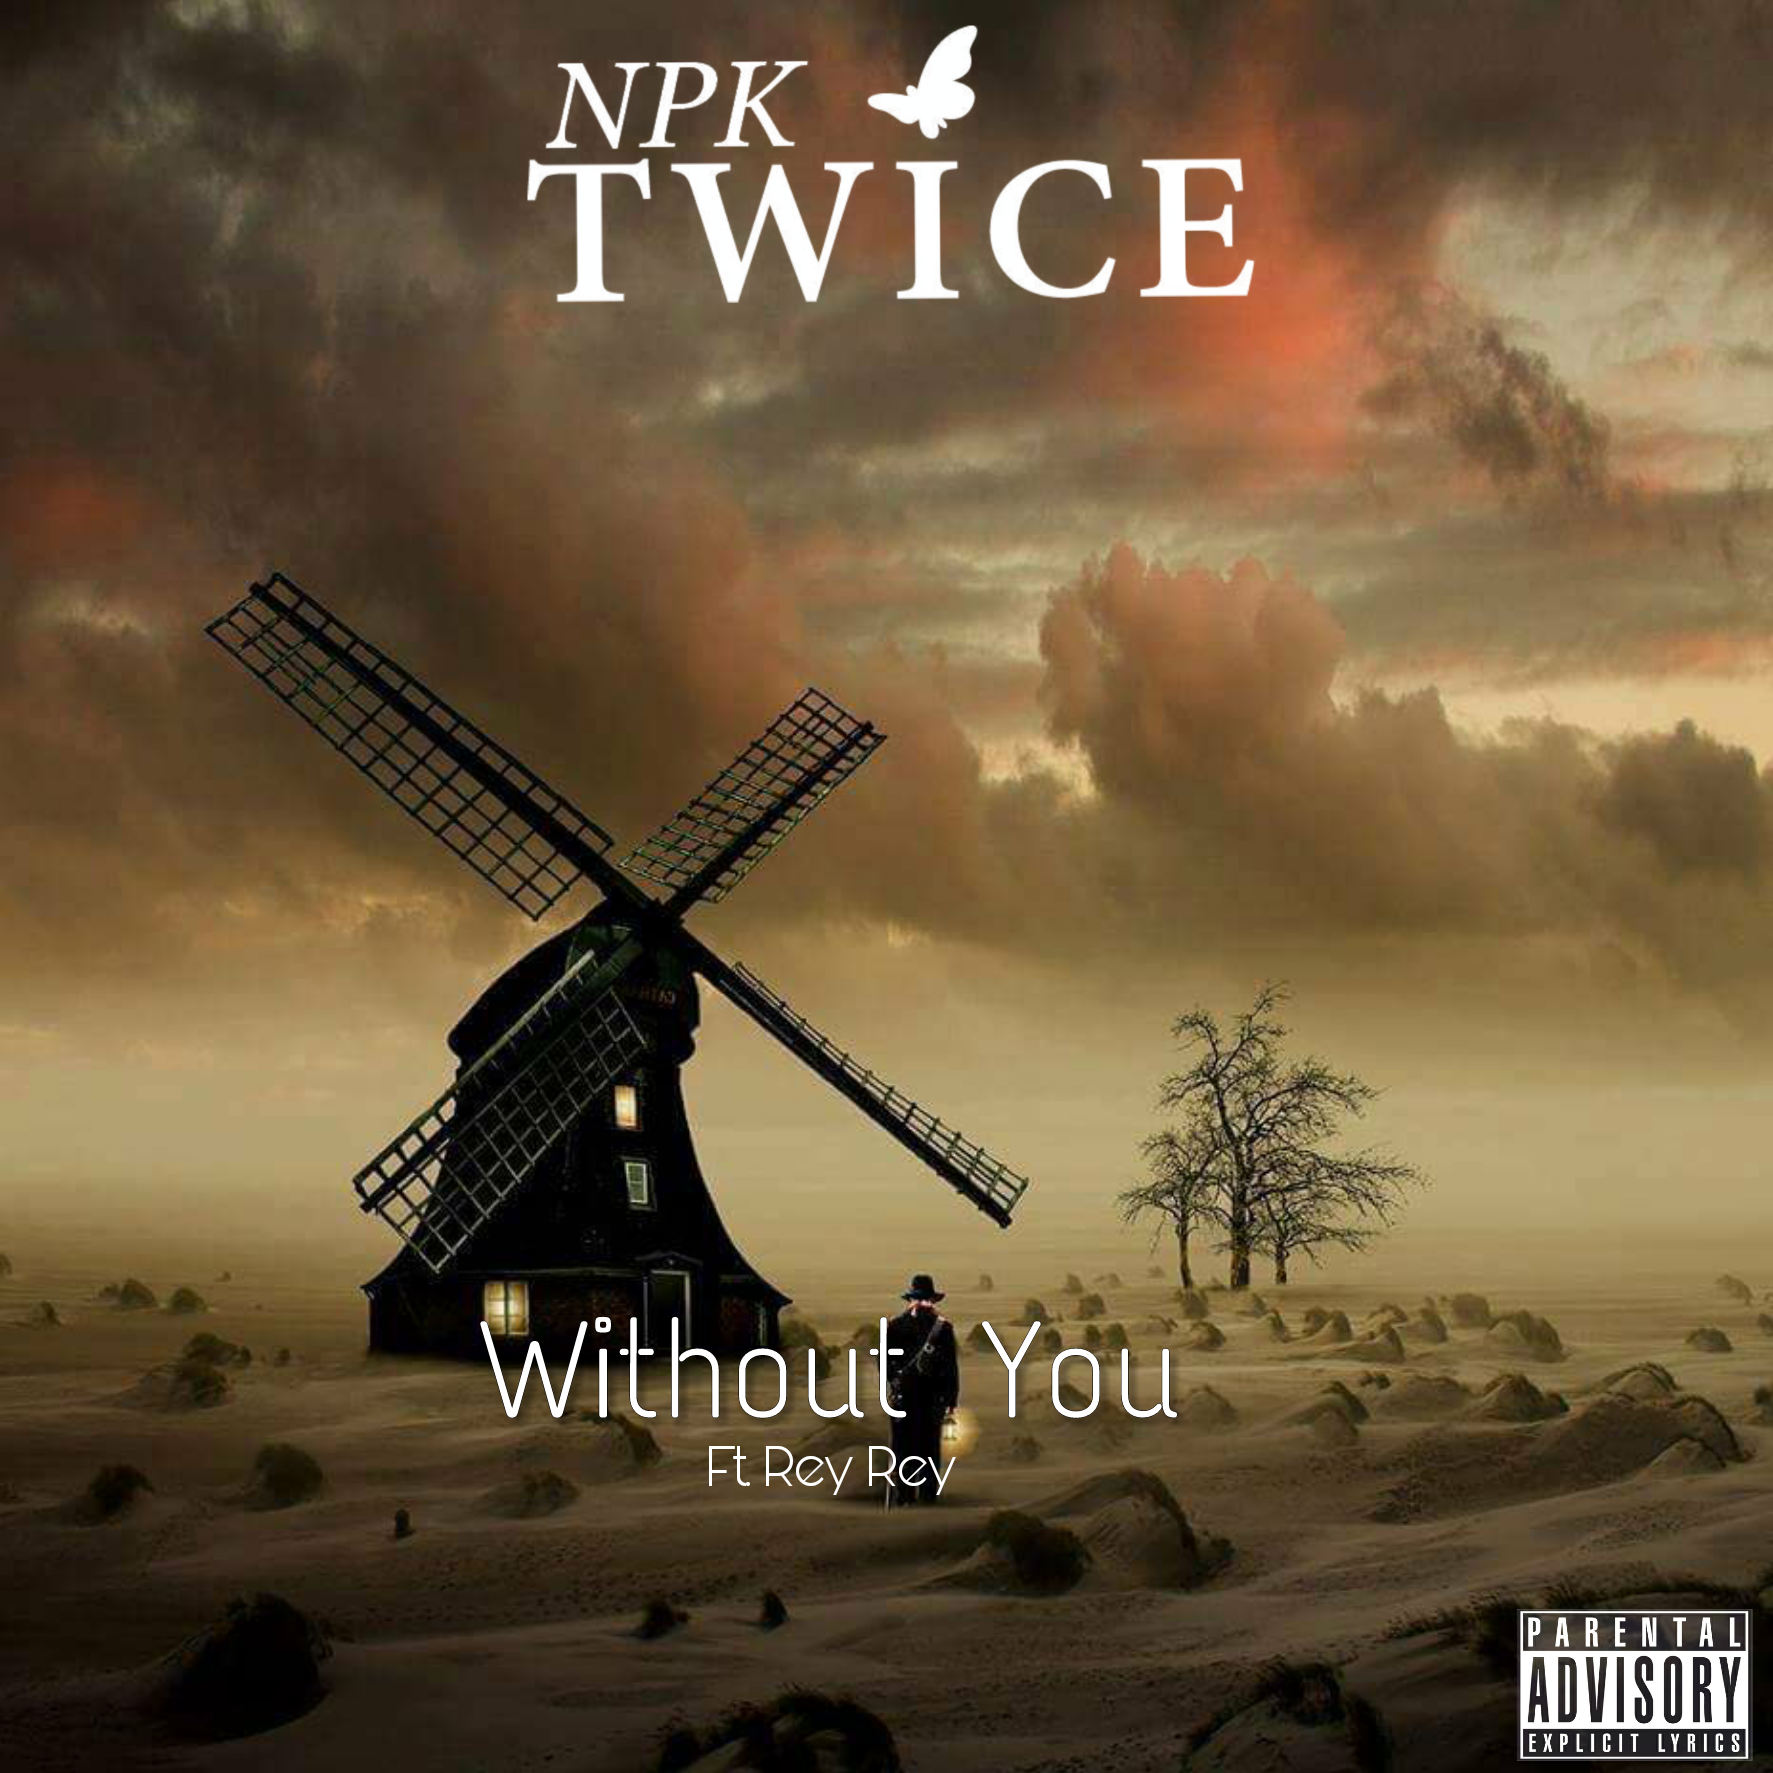 NPK TWICE-WITHOUT YOU Lyrics